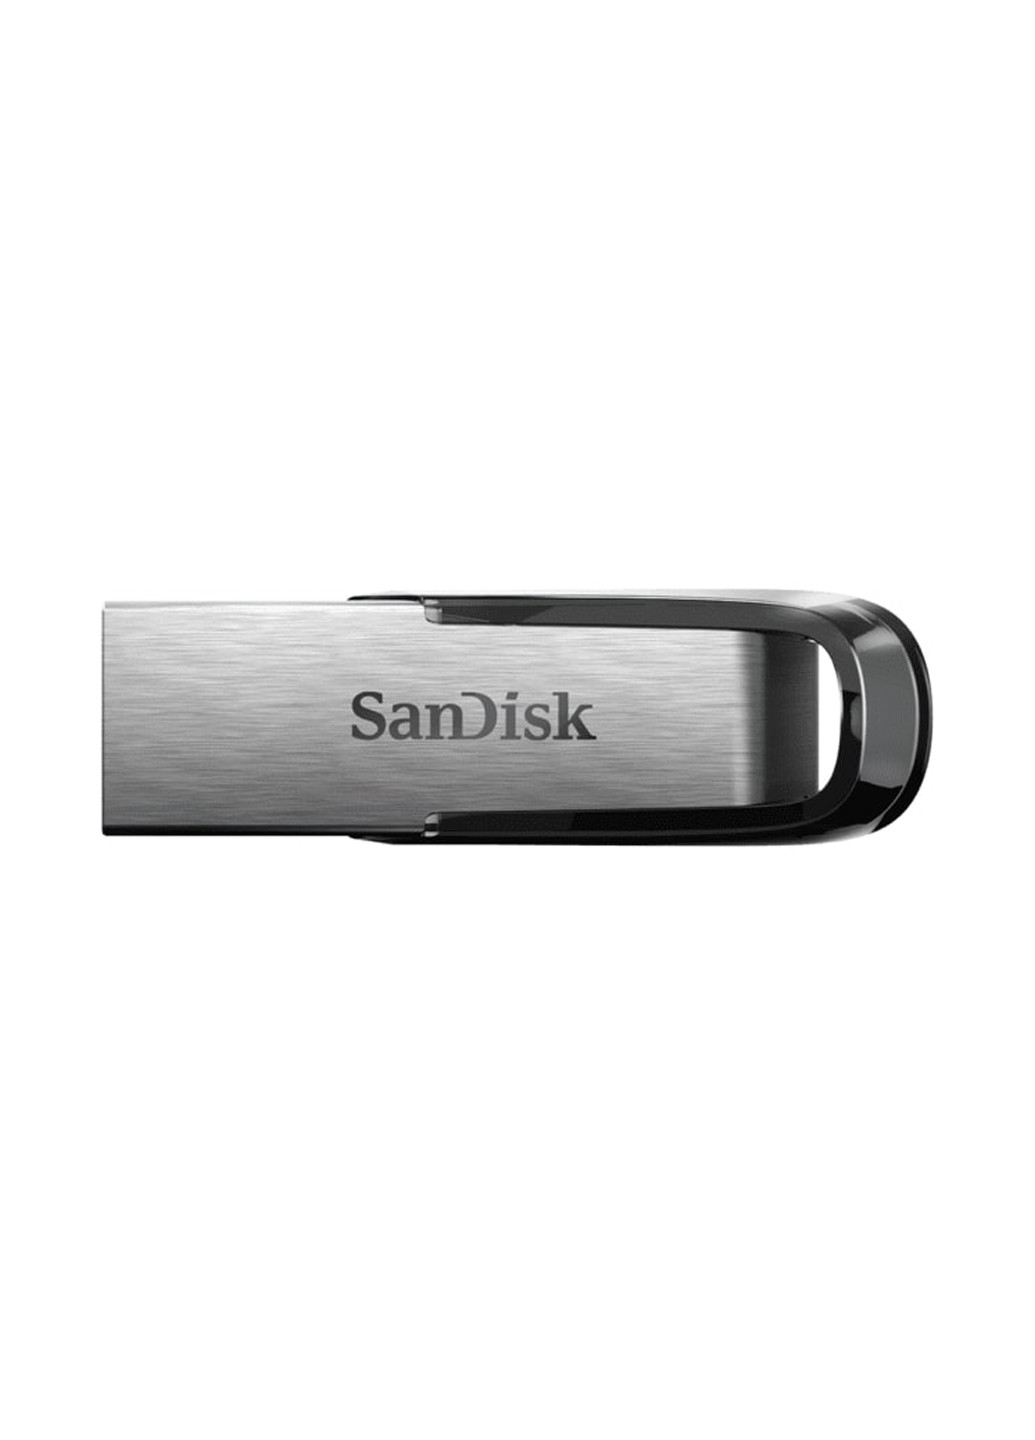 Флеш пам'ять USB Ultra Flair 32GB USB 3.0 Black (SDCZ73-032G-G46) SanDisk флеш память usb sandisk ultra flair 32gb usb 3.0 black (sdcz73-032g-g46) (135165490)